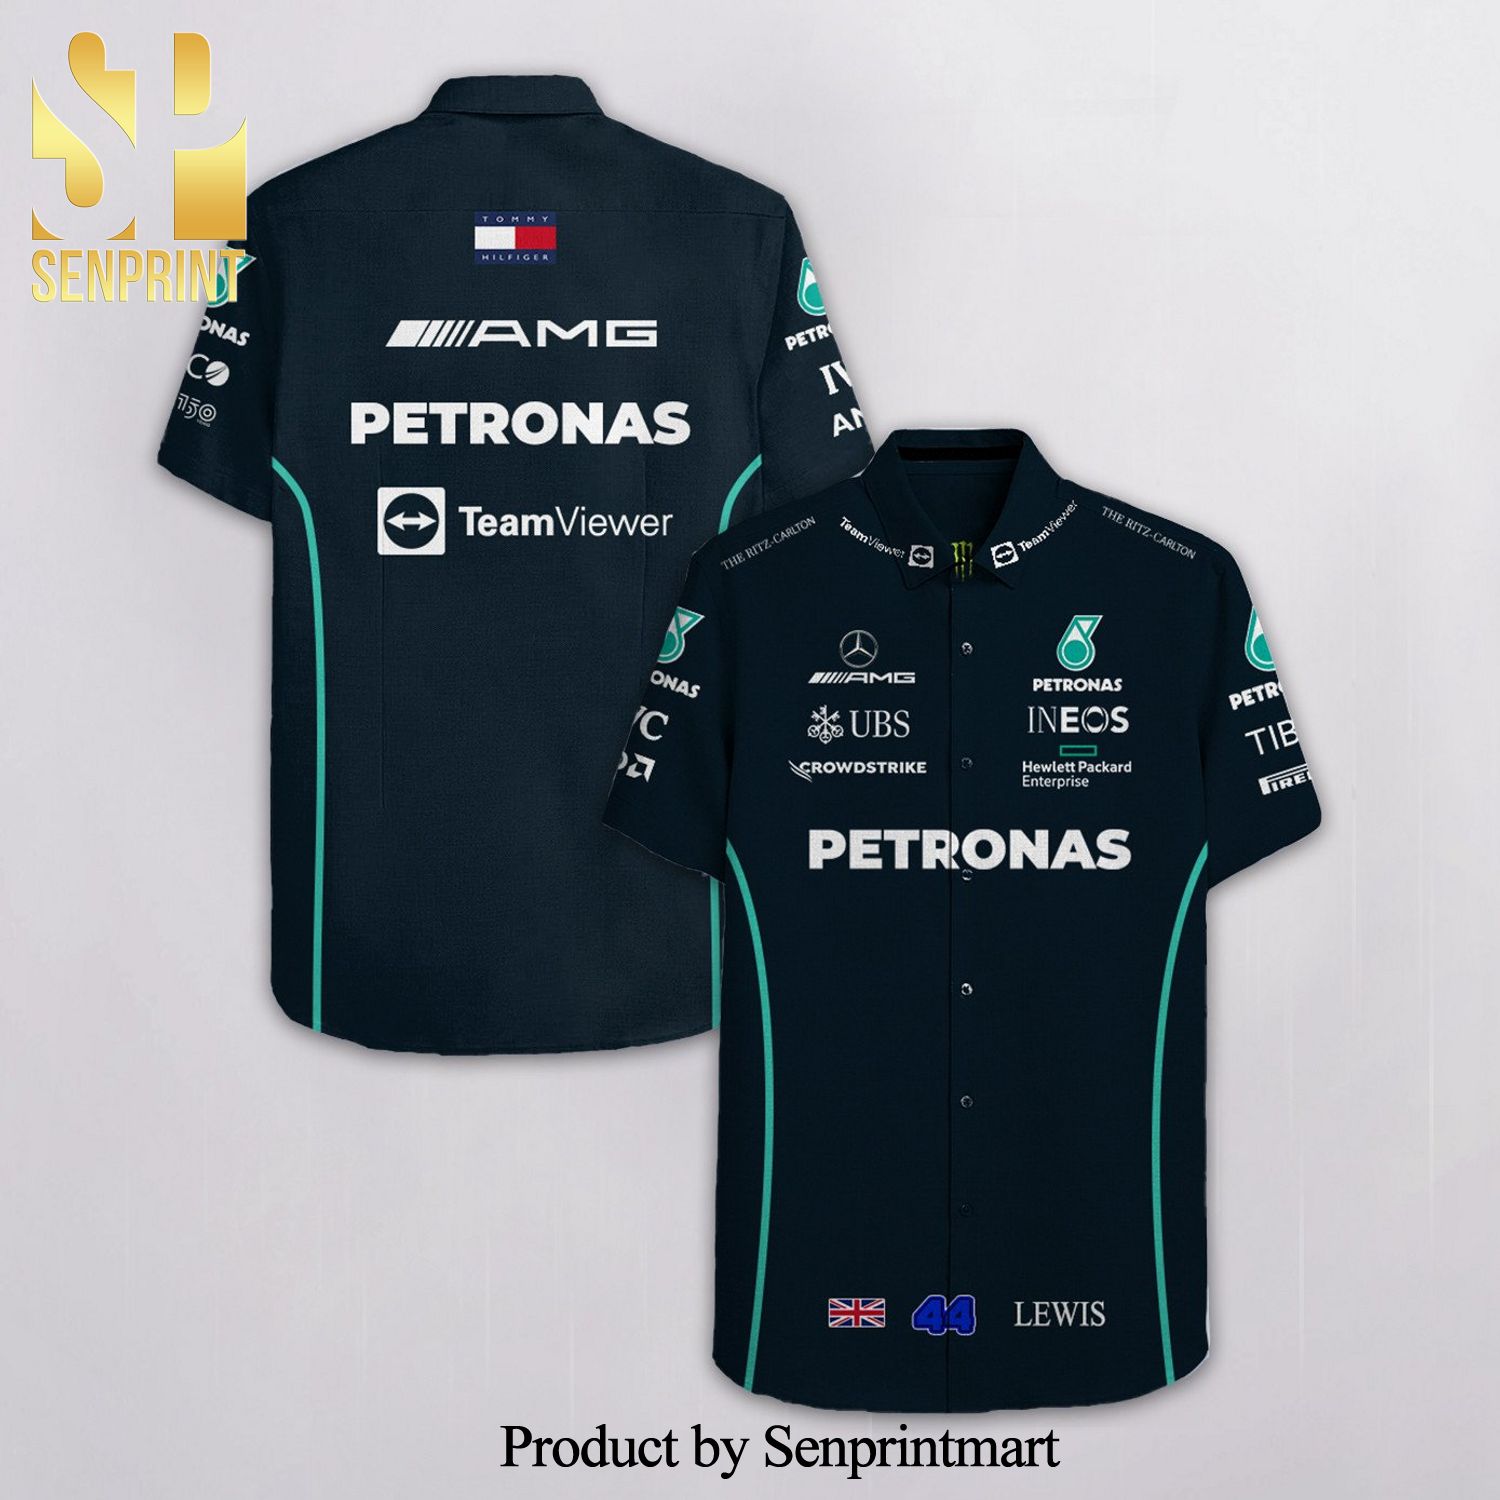 Lewis Hamilton 44 Mercedes AMG Petronas F1 Racing Team Viewer Ineos Ubs Full Printing Hawaiian Shirt